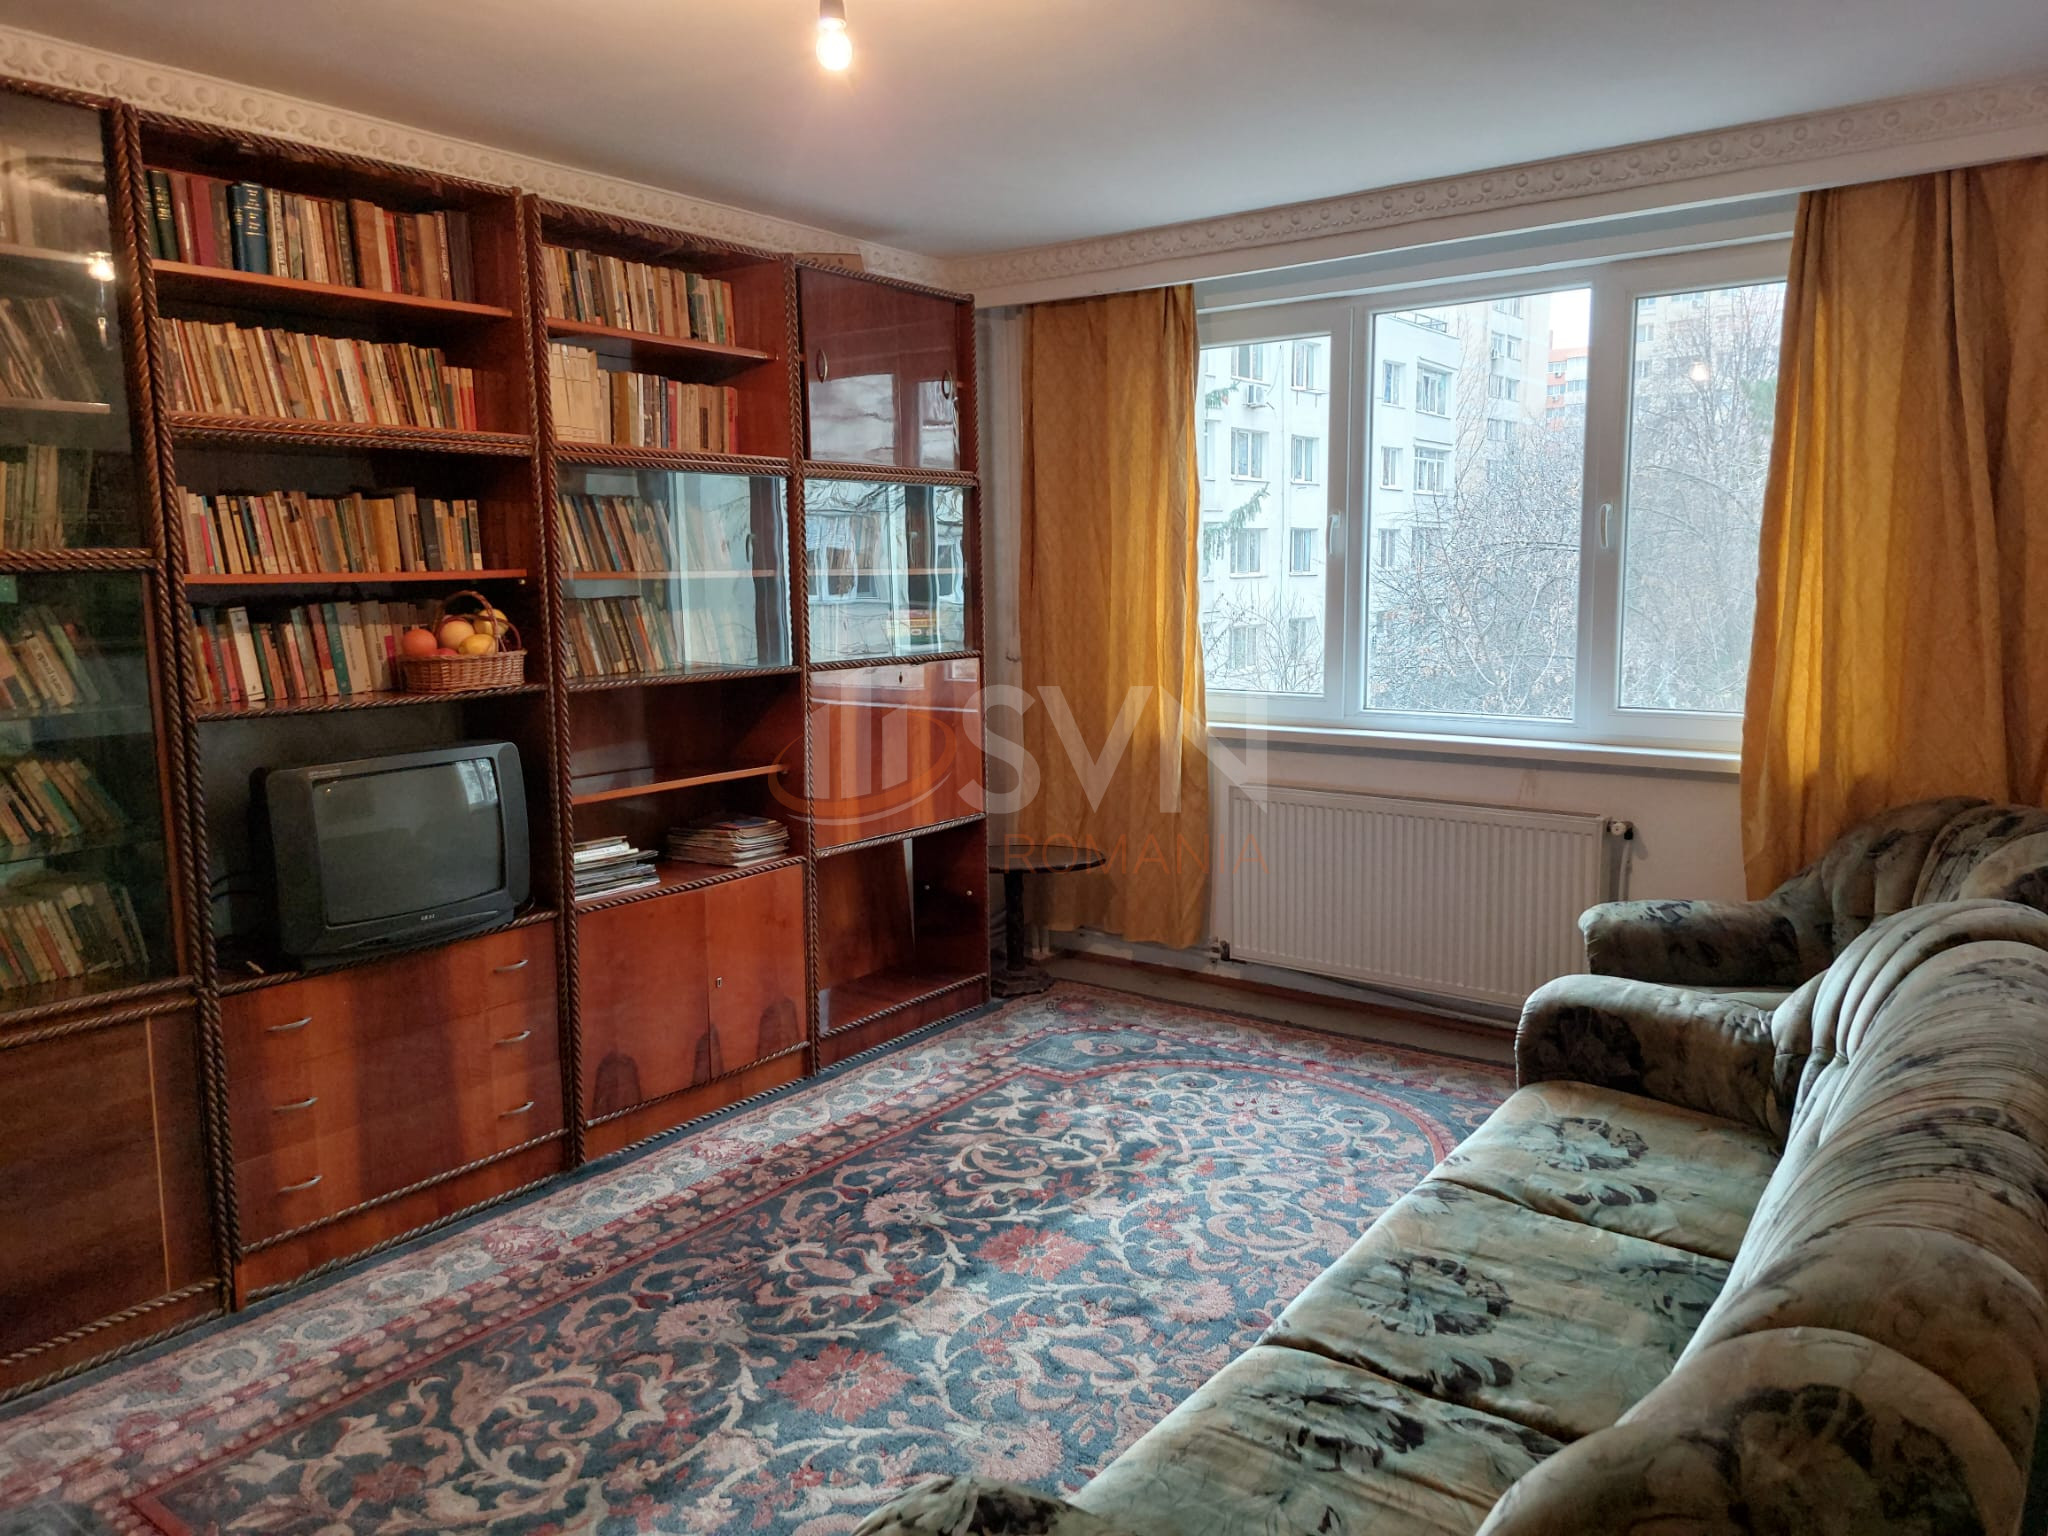 Apartament, 3 camere Bucuresti/Ozana